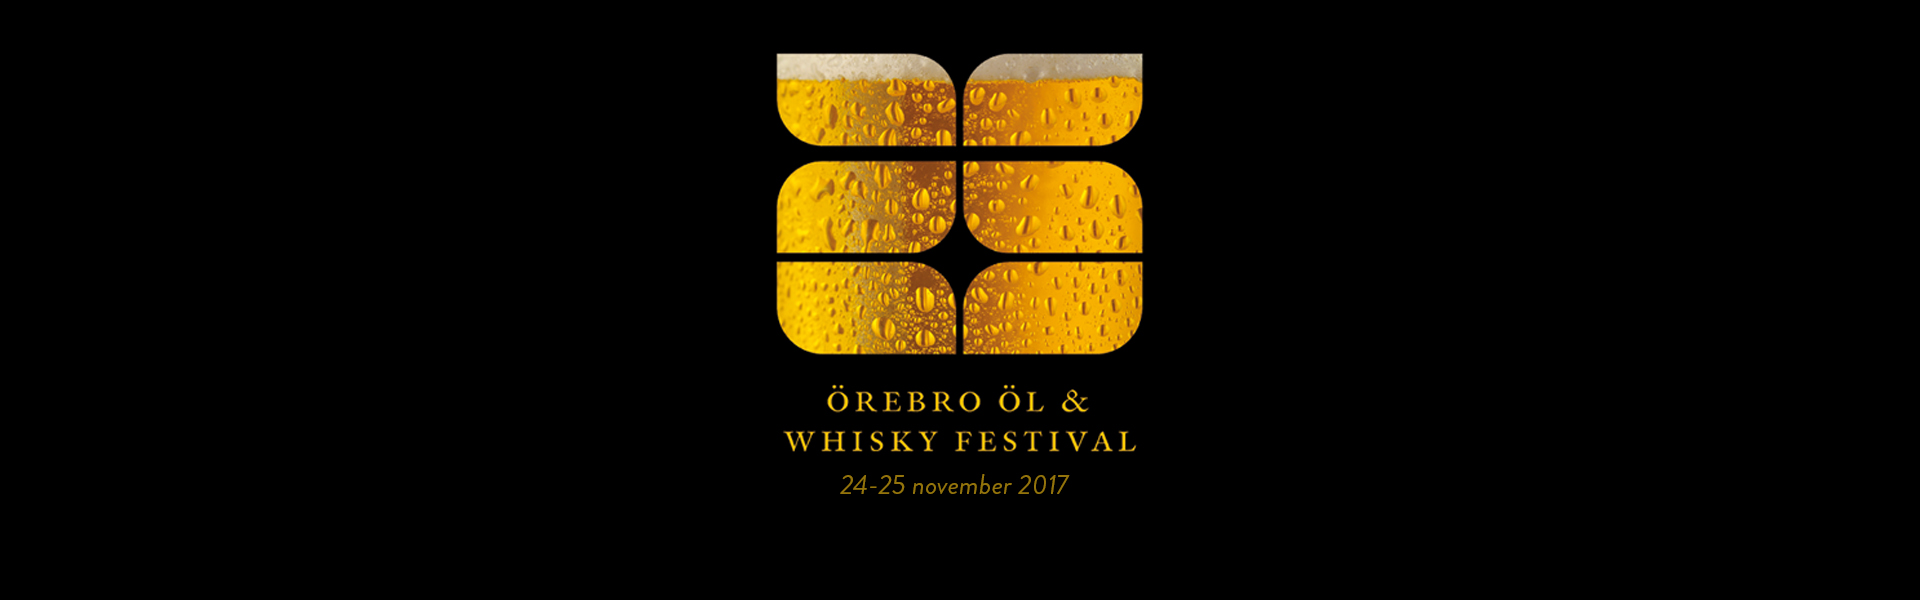 Örebro Öl och Whisky Festival